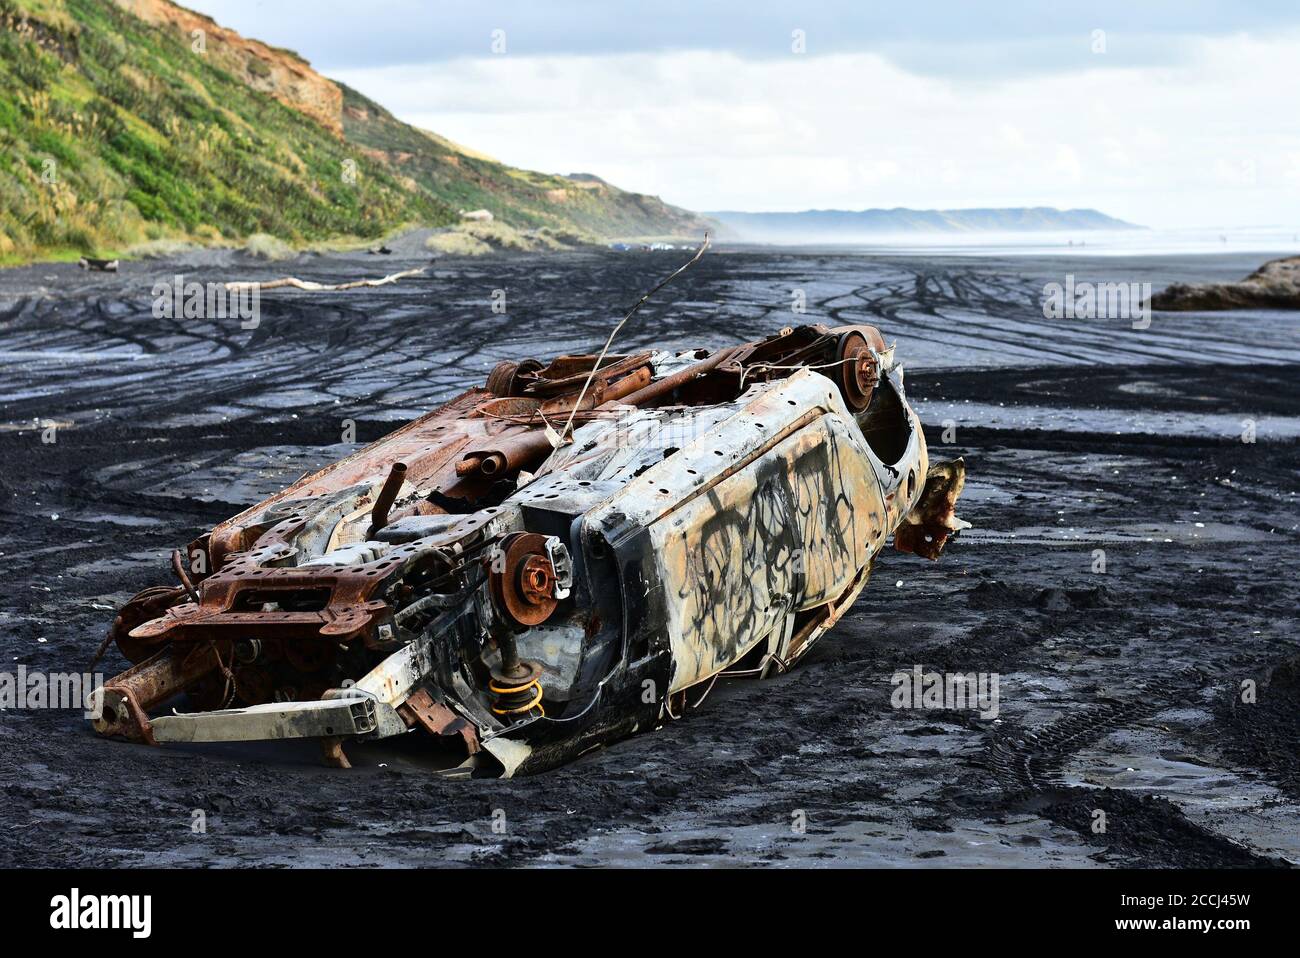 Une voiture prise par la marée haute et laissée abandonnée sur le sable noir de la plage de Karioitahi, Nouvelle-Zélande. Épave de voiture enterrée dans le sable noir, semi-submergée dans le sable. Banque D'Images